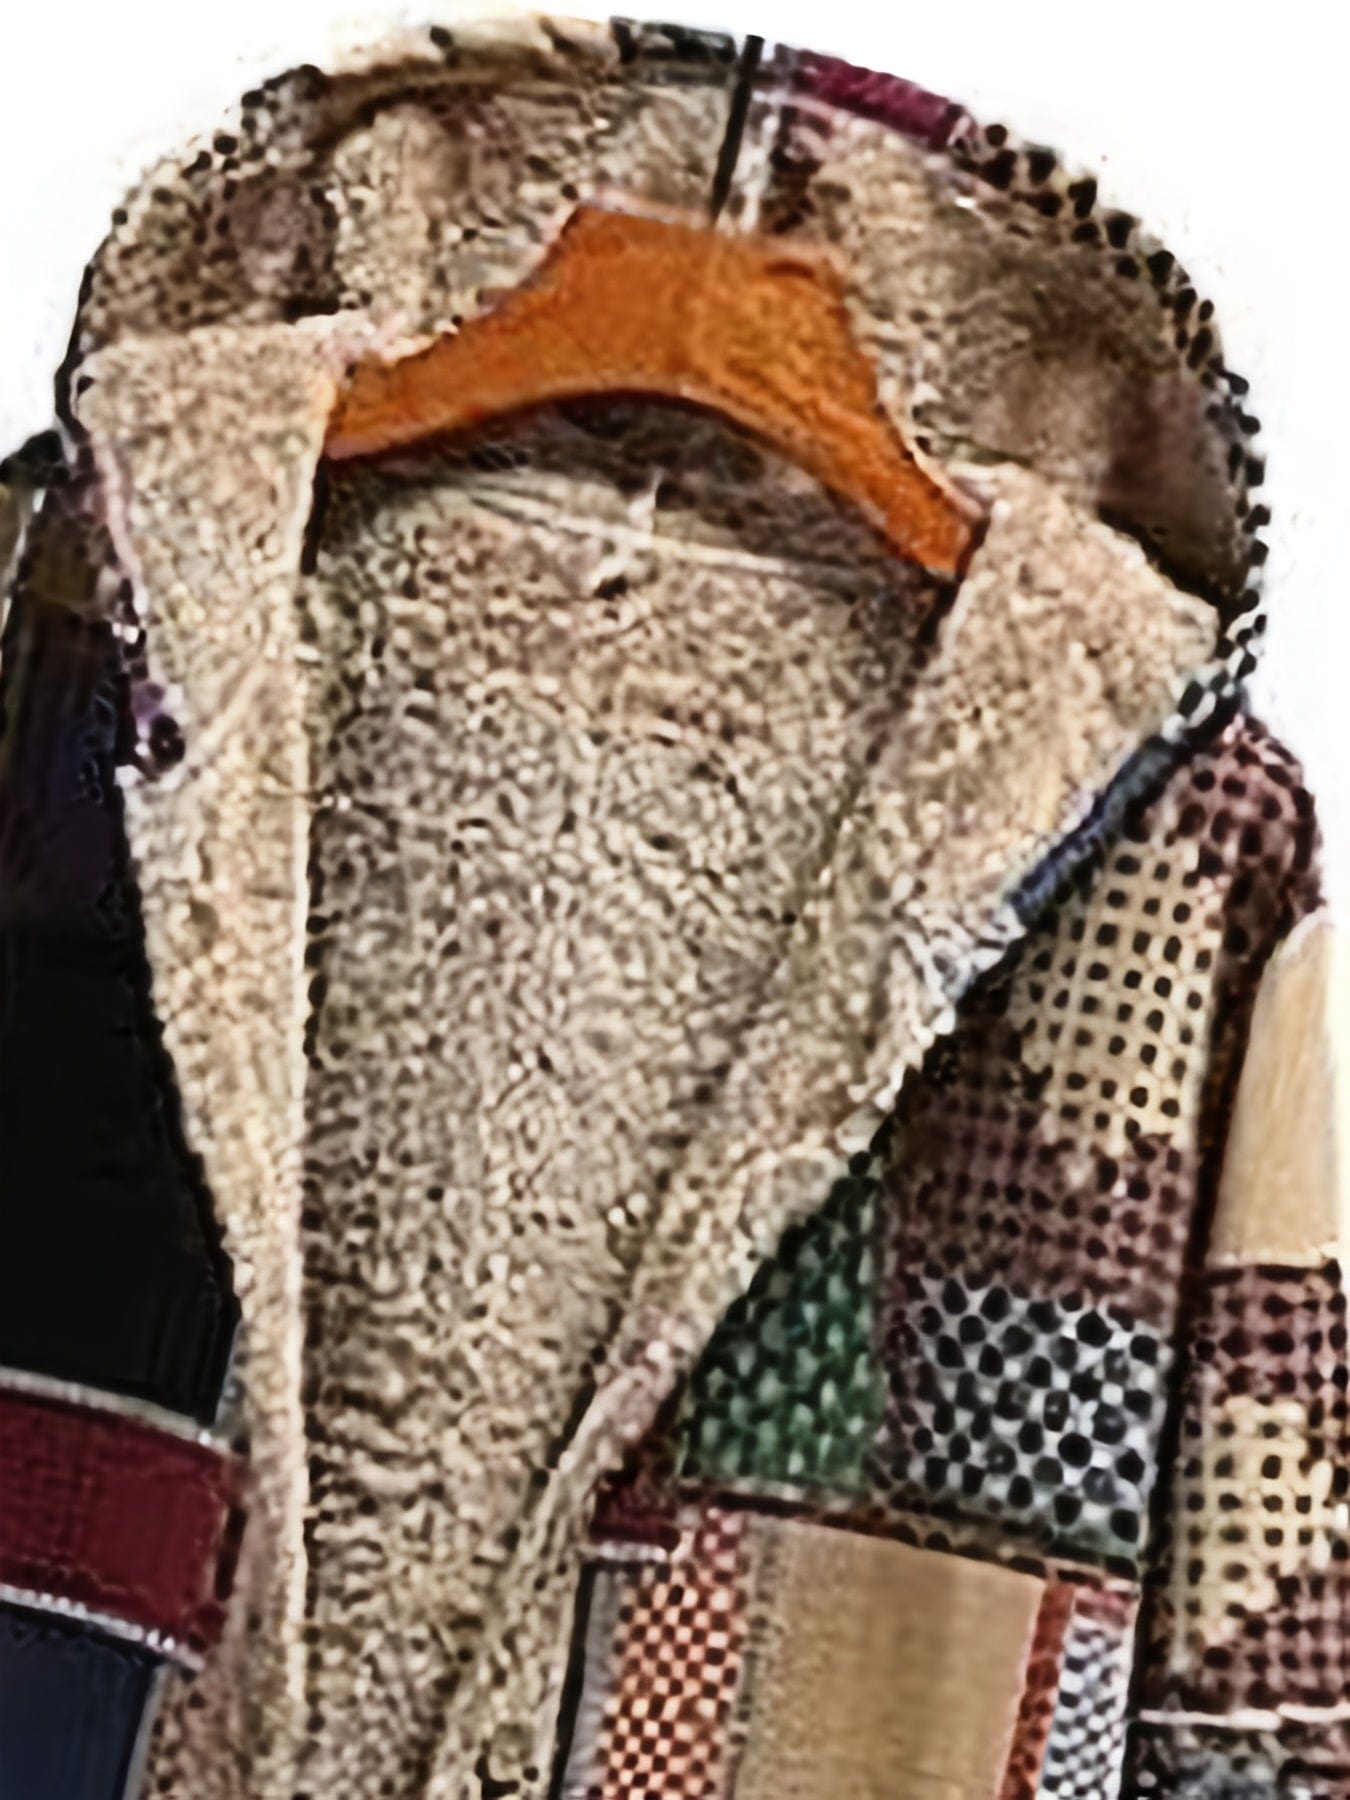 Plus Size Colorblock Long Sleeve Fleece Liner Hoodie Coat, Women's Plus Plush Button Up Coat